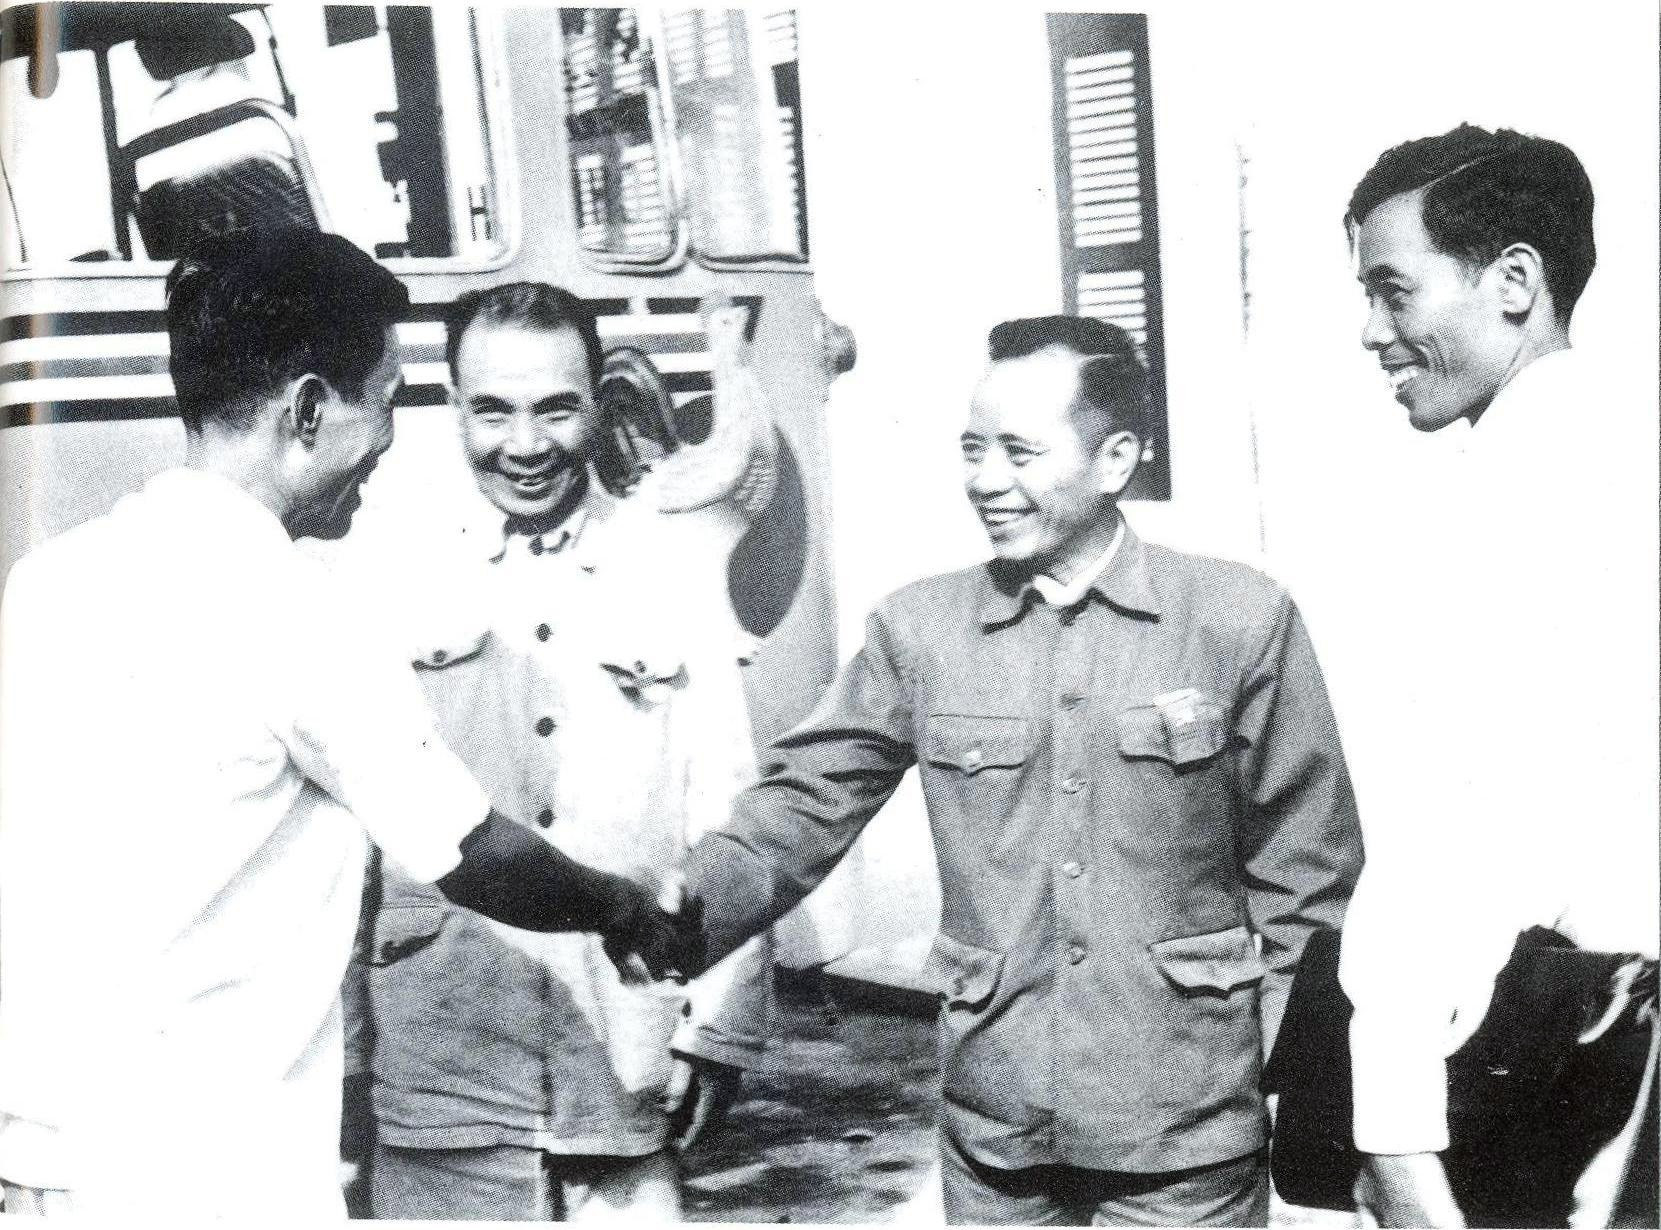 Đồng chí Phan Văn Định (thứ hai từ trái sang) trong một lần về thăm Quảng Nam - Đà Nẵng sau ngày giải phóng. Ảnh tư liệu